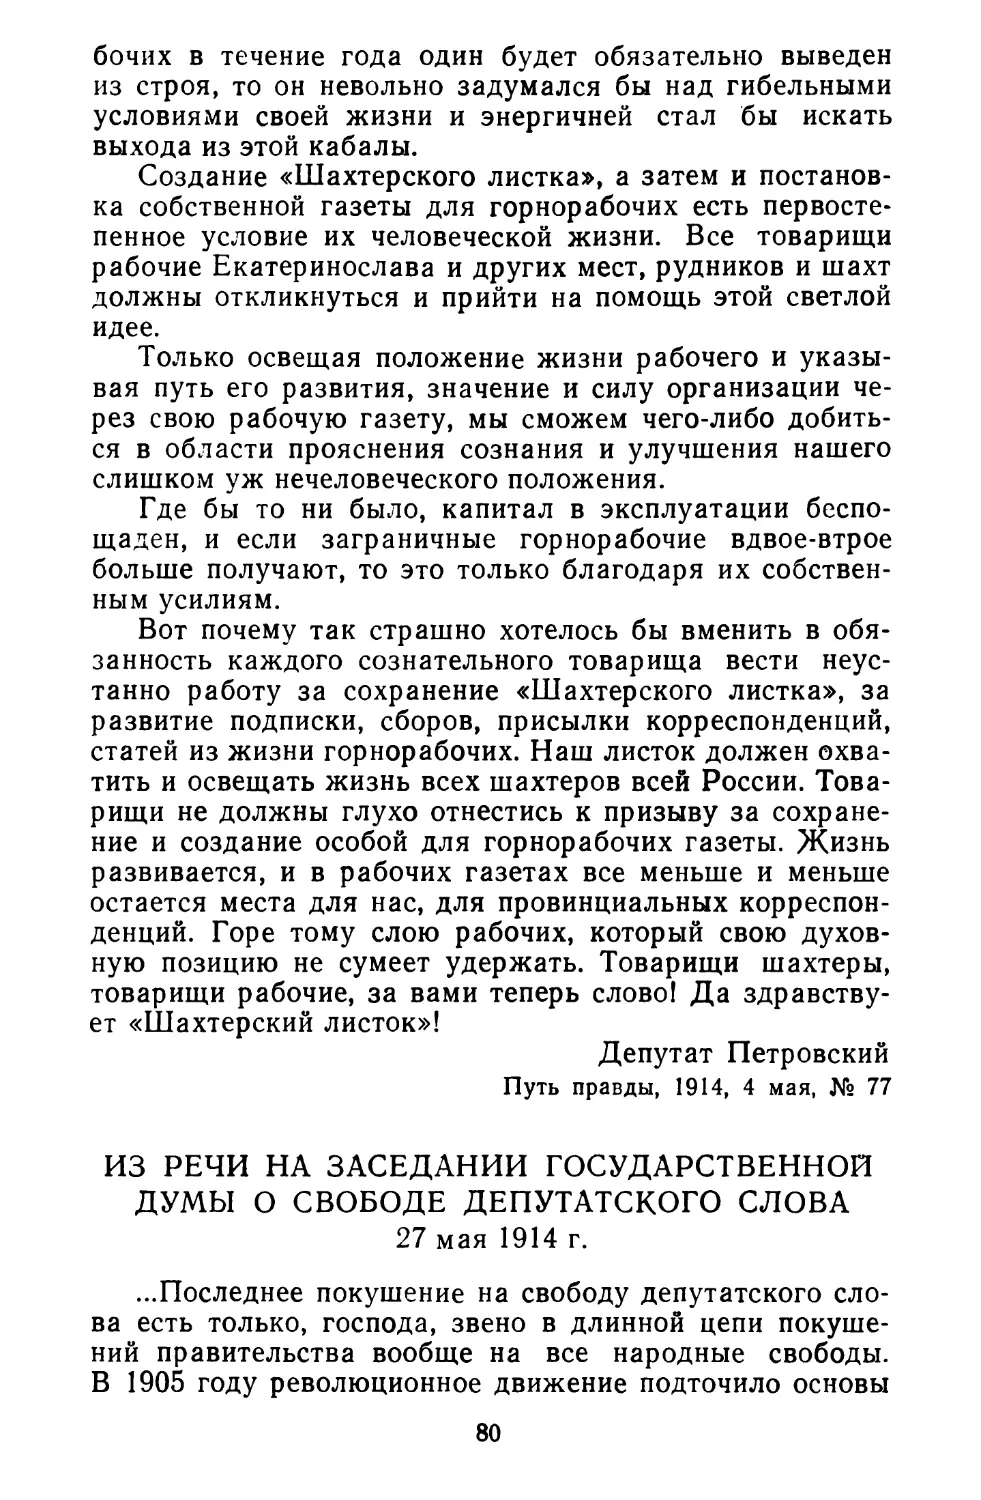 Из речи на заседании Государственной думы о свободе депутатского слова. 27 мая 1914 г.